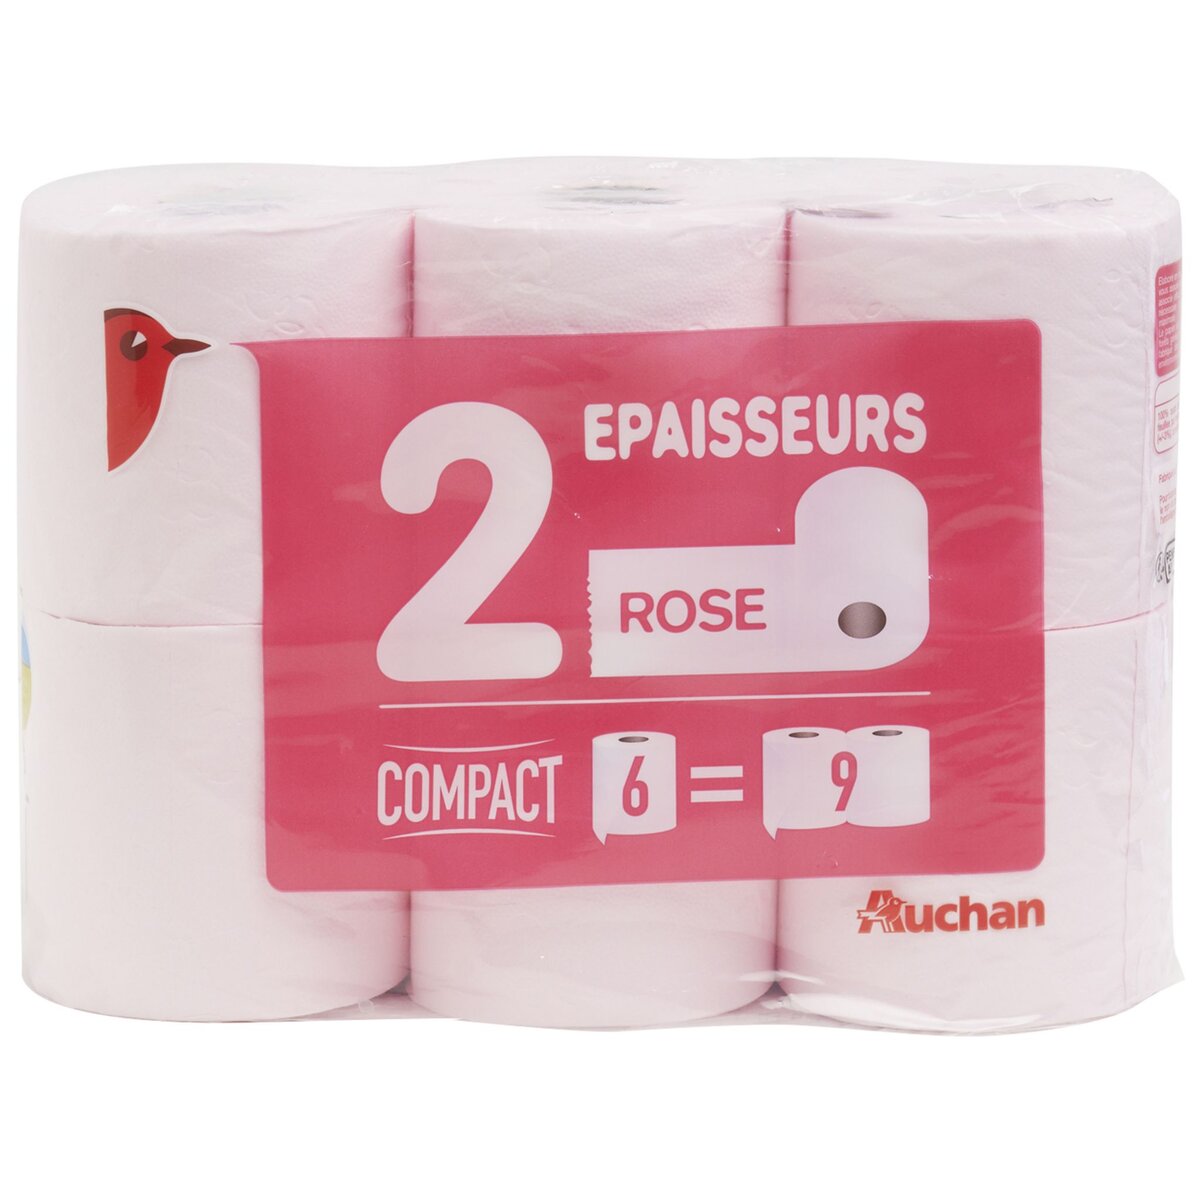 AUCHAN Papier toilette rose compact 2 épaisseurs = 9 standards 6 rouleaux